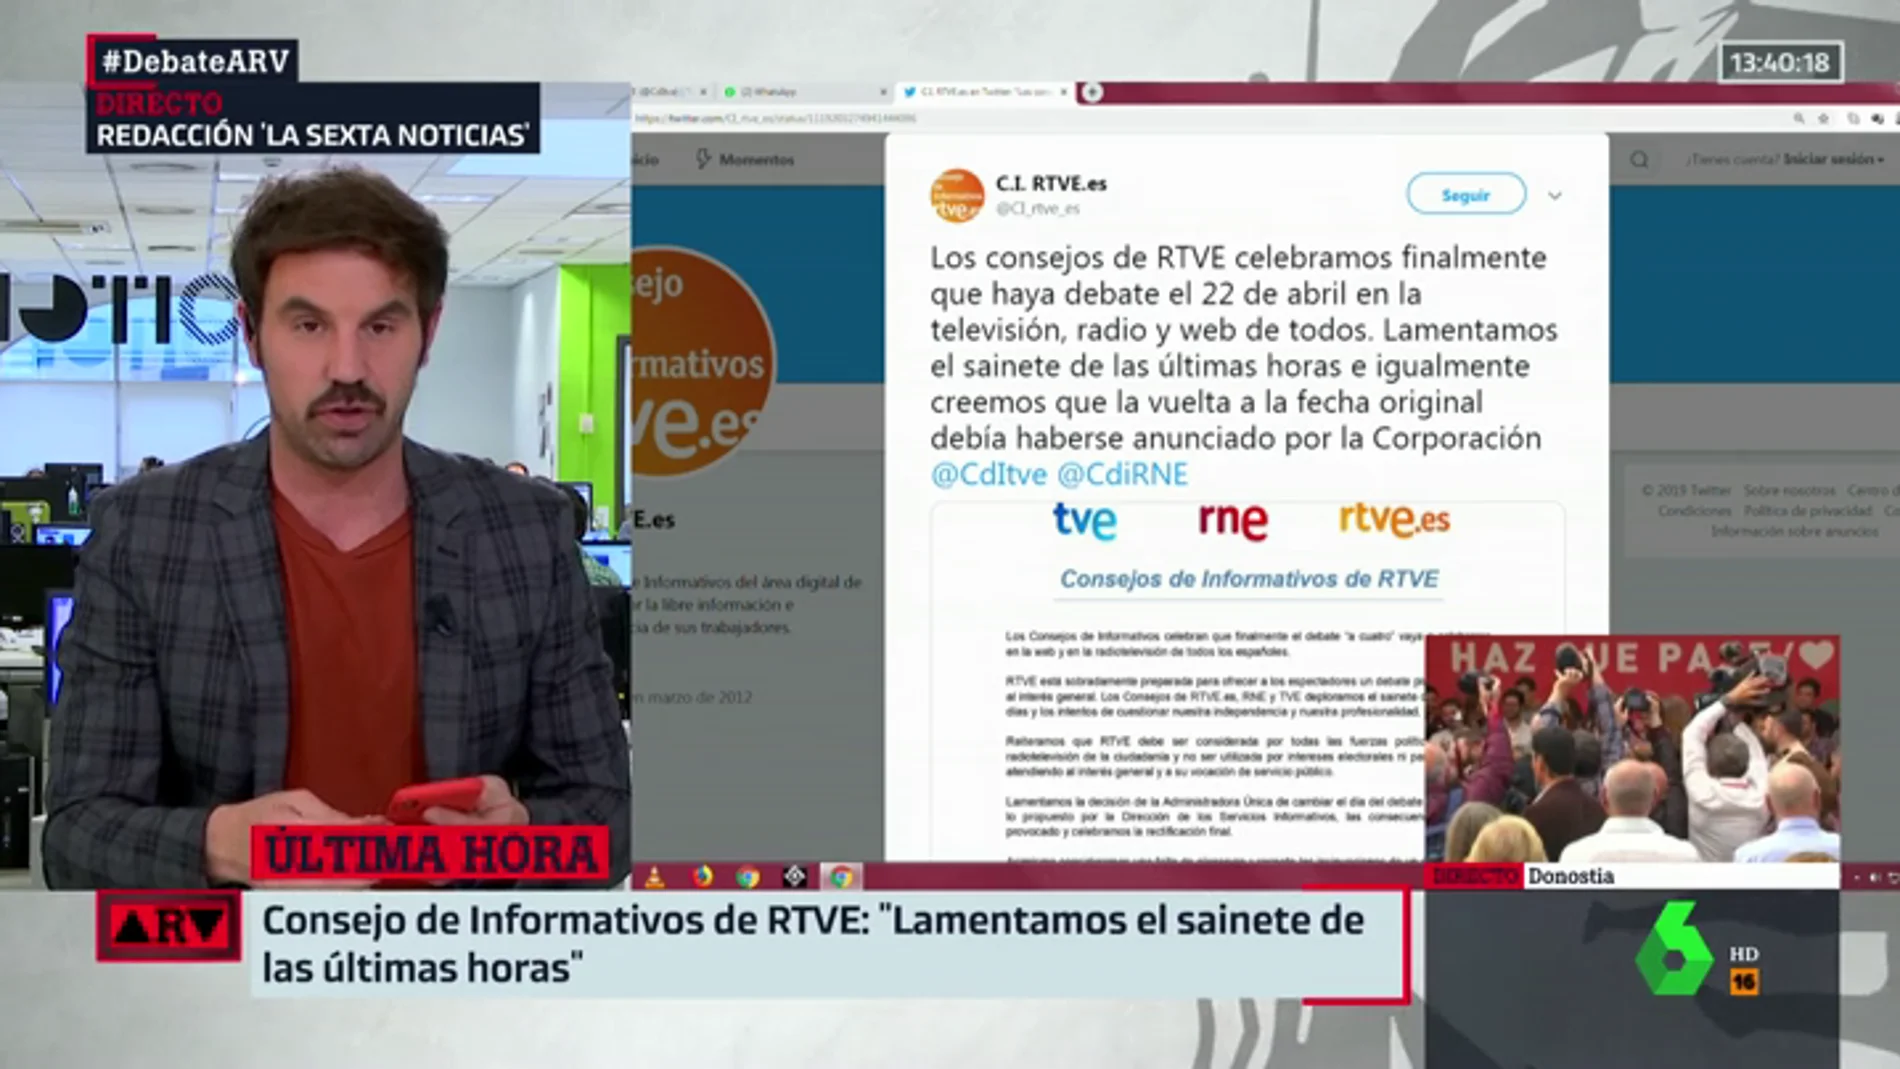 El Consejo de Informativos de RTVE anuncia el cambio de fecha del debate al 22: "Lamentamos el sainete"